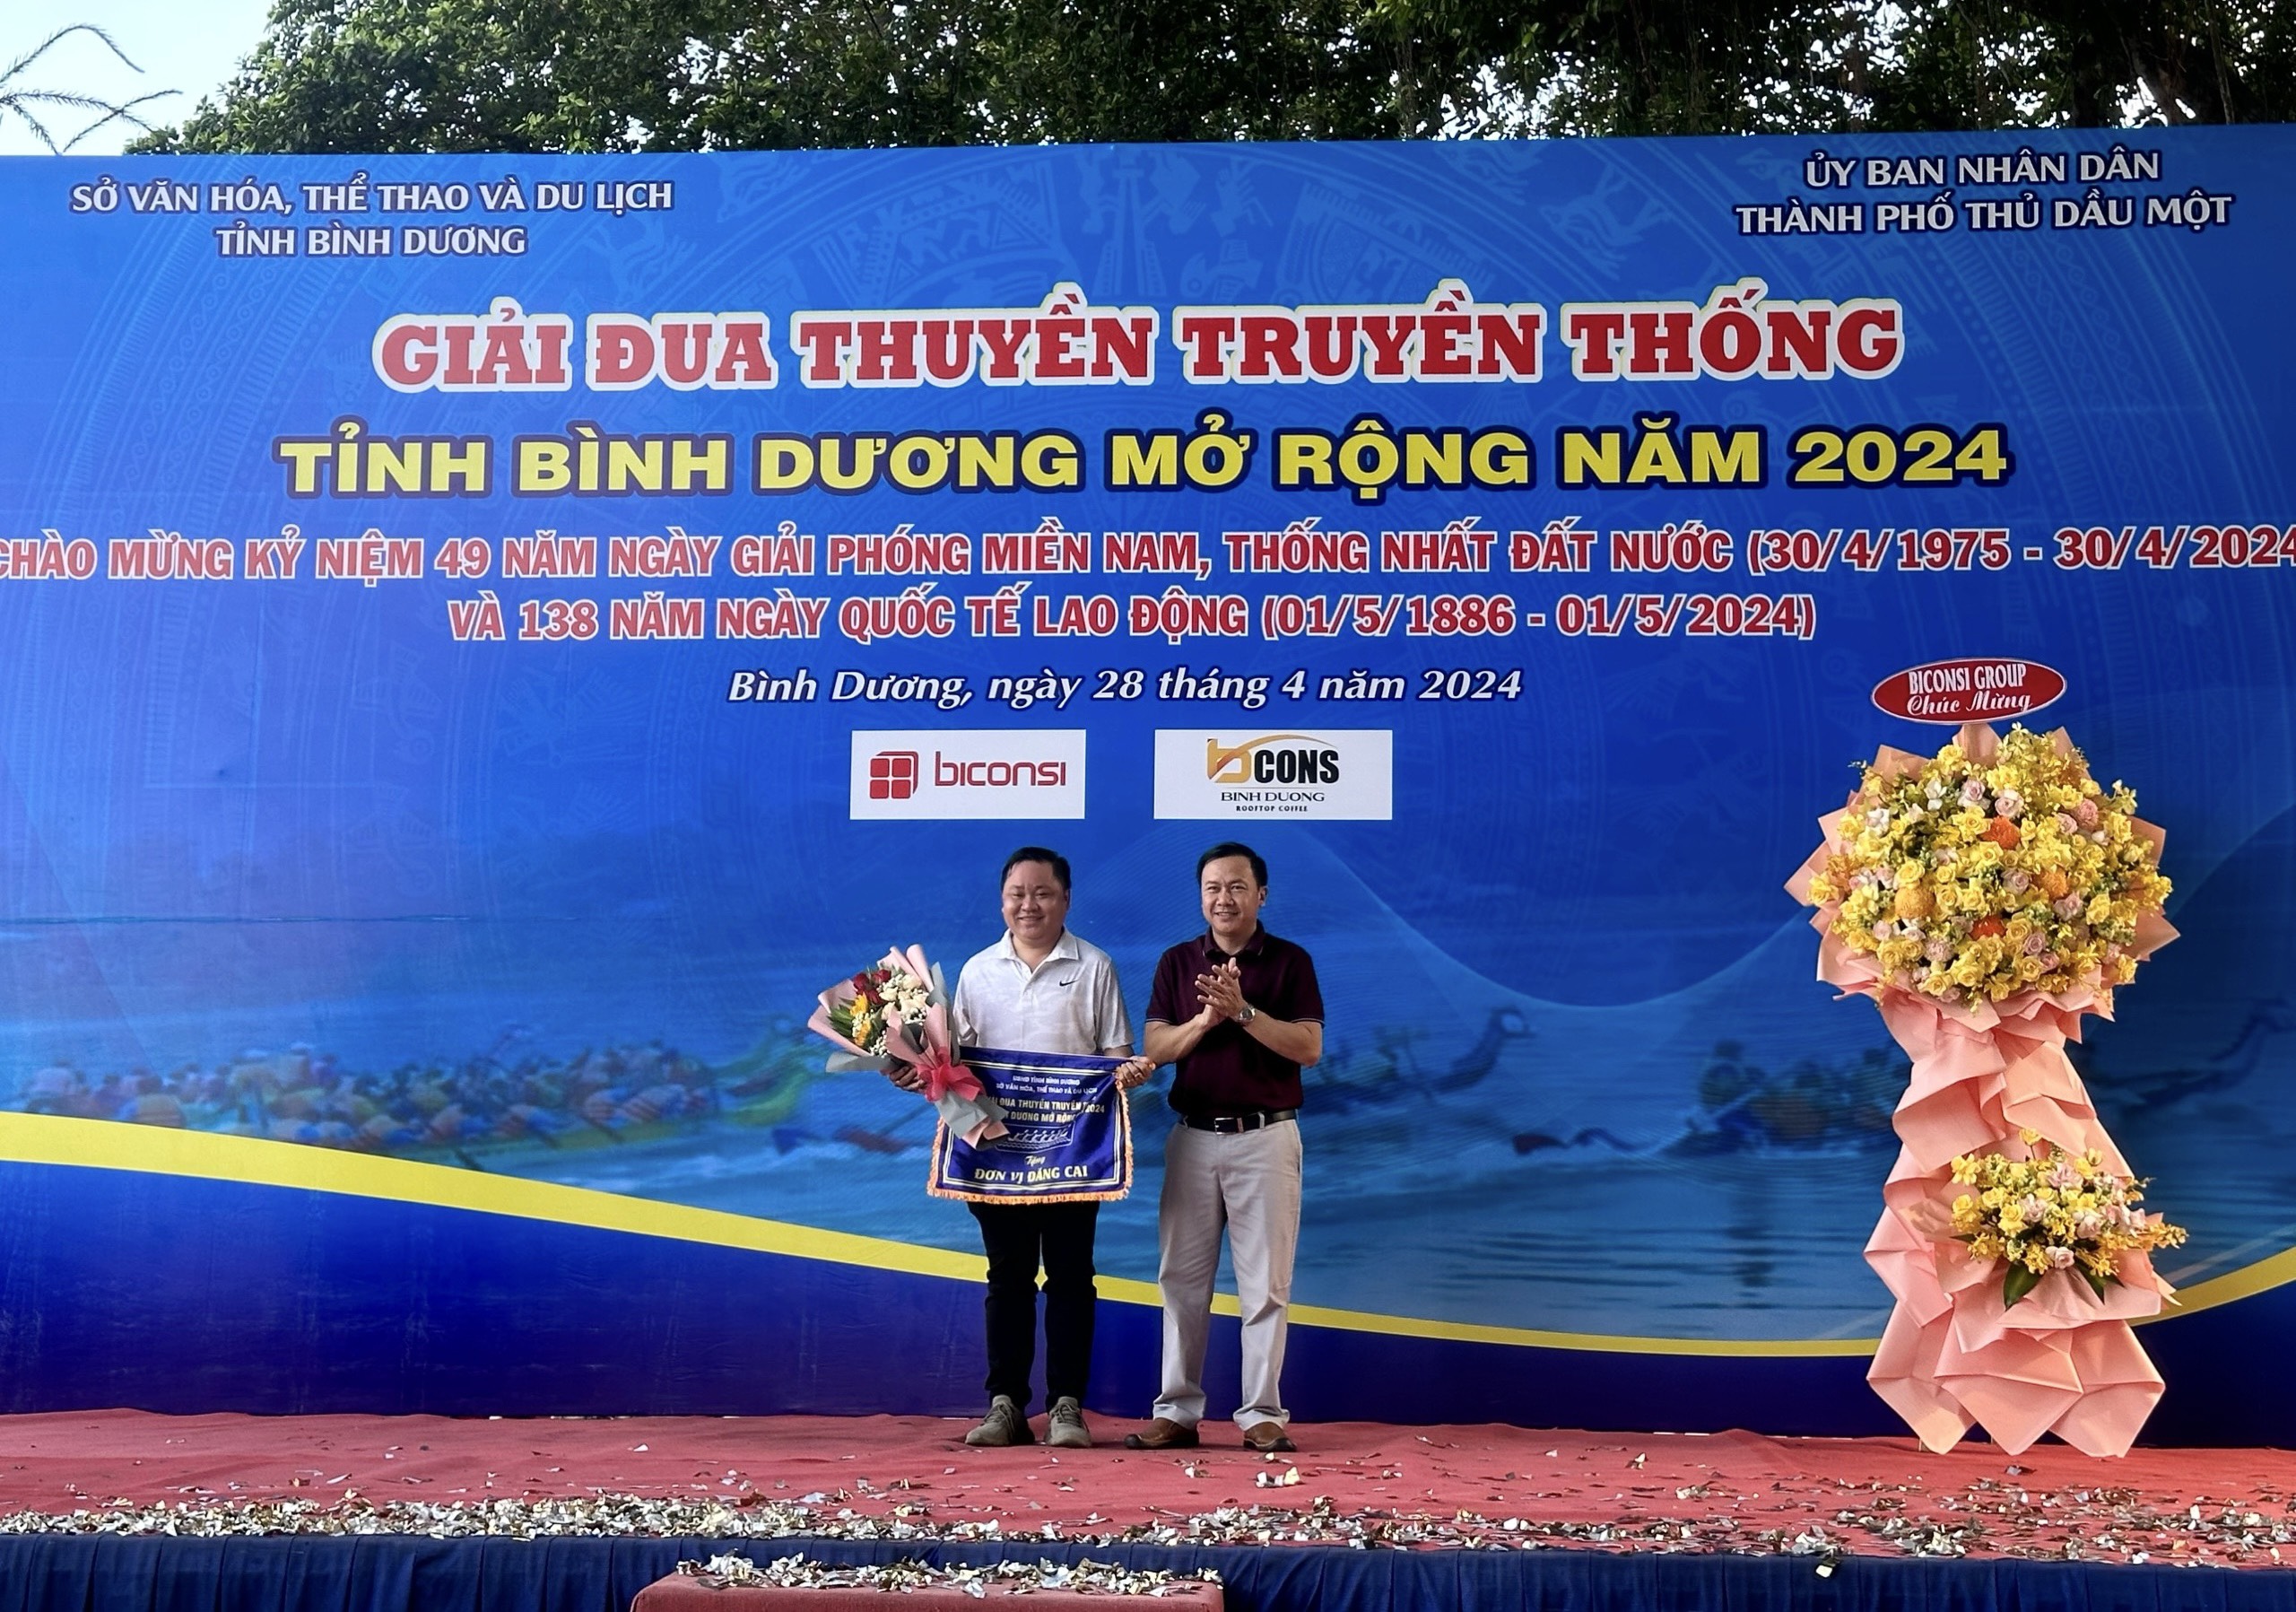 Ông Bùi Hữu Toàn - Giám đốc Sở Văn hóa, Thể thao và Du lịch tỉnh Bình Dương  tặng cờ lưu niệm cho đại diện TP Thủ Dầu Một, đơn vị đăng cai giải.